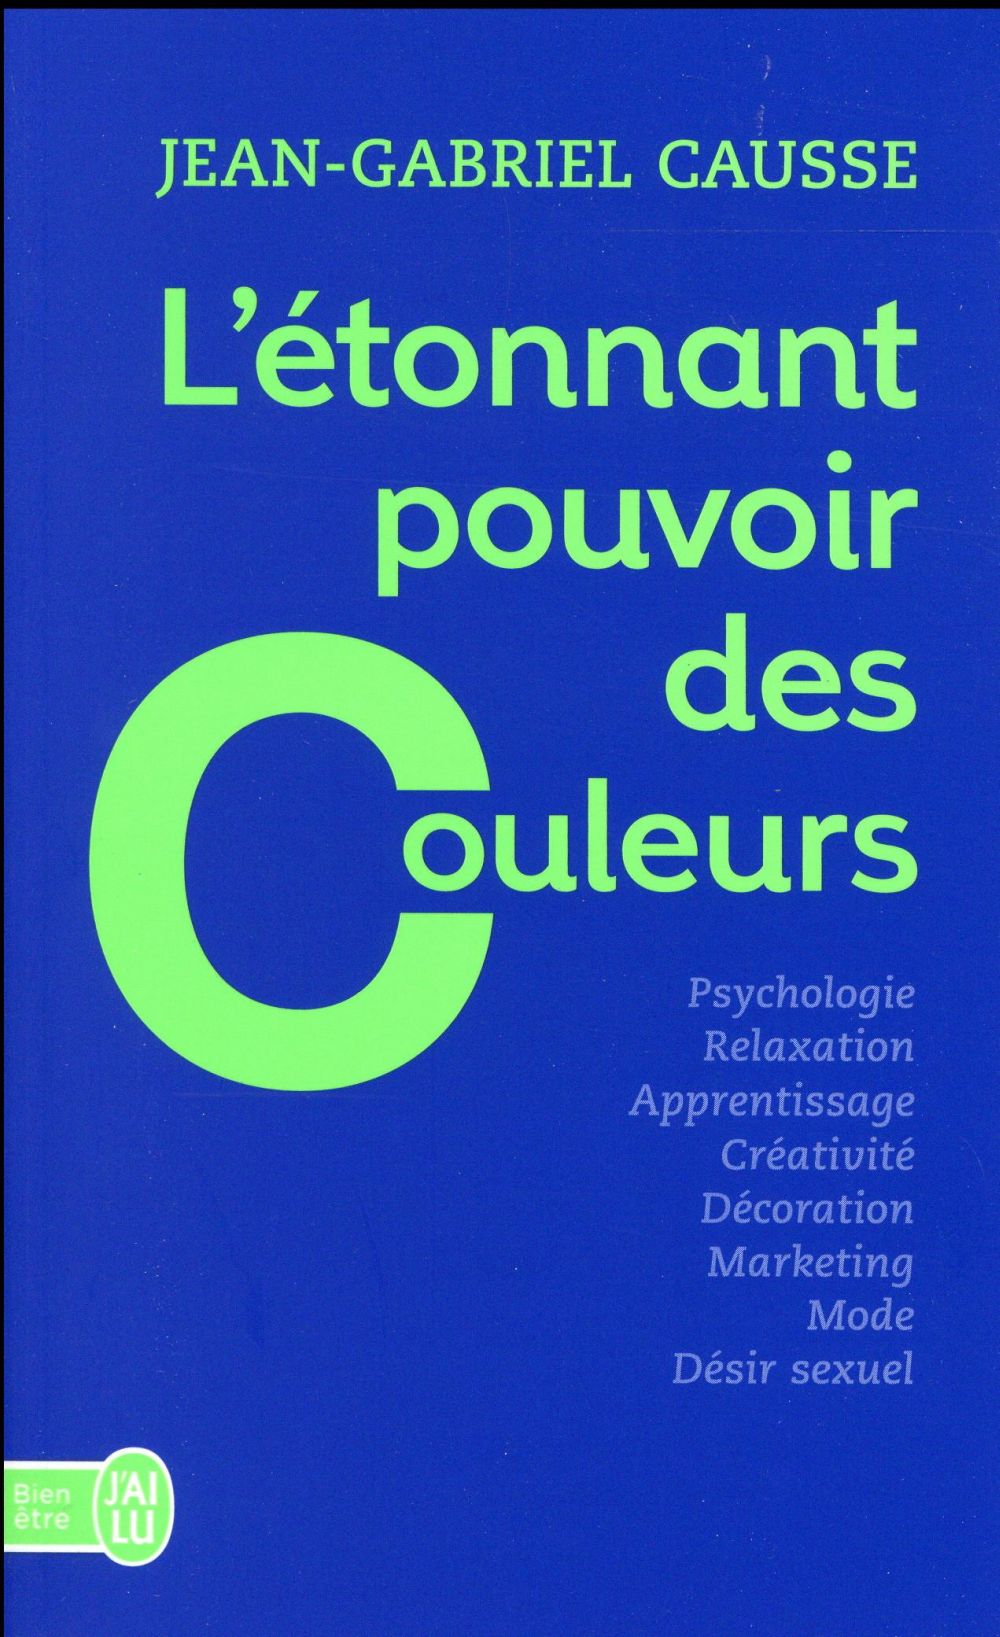 L'ETONNANT POUVOIR DES COULEURS - COMMENT ELLES INFLUENCENT COMPORTEMENTS, HUMEUR, CAPACITES INTELLE